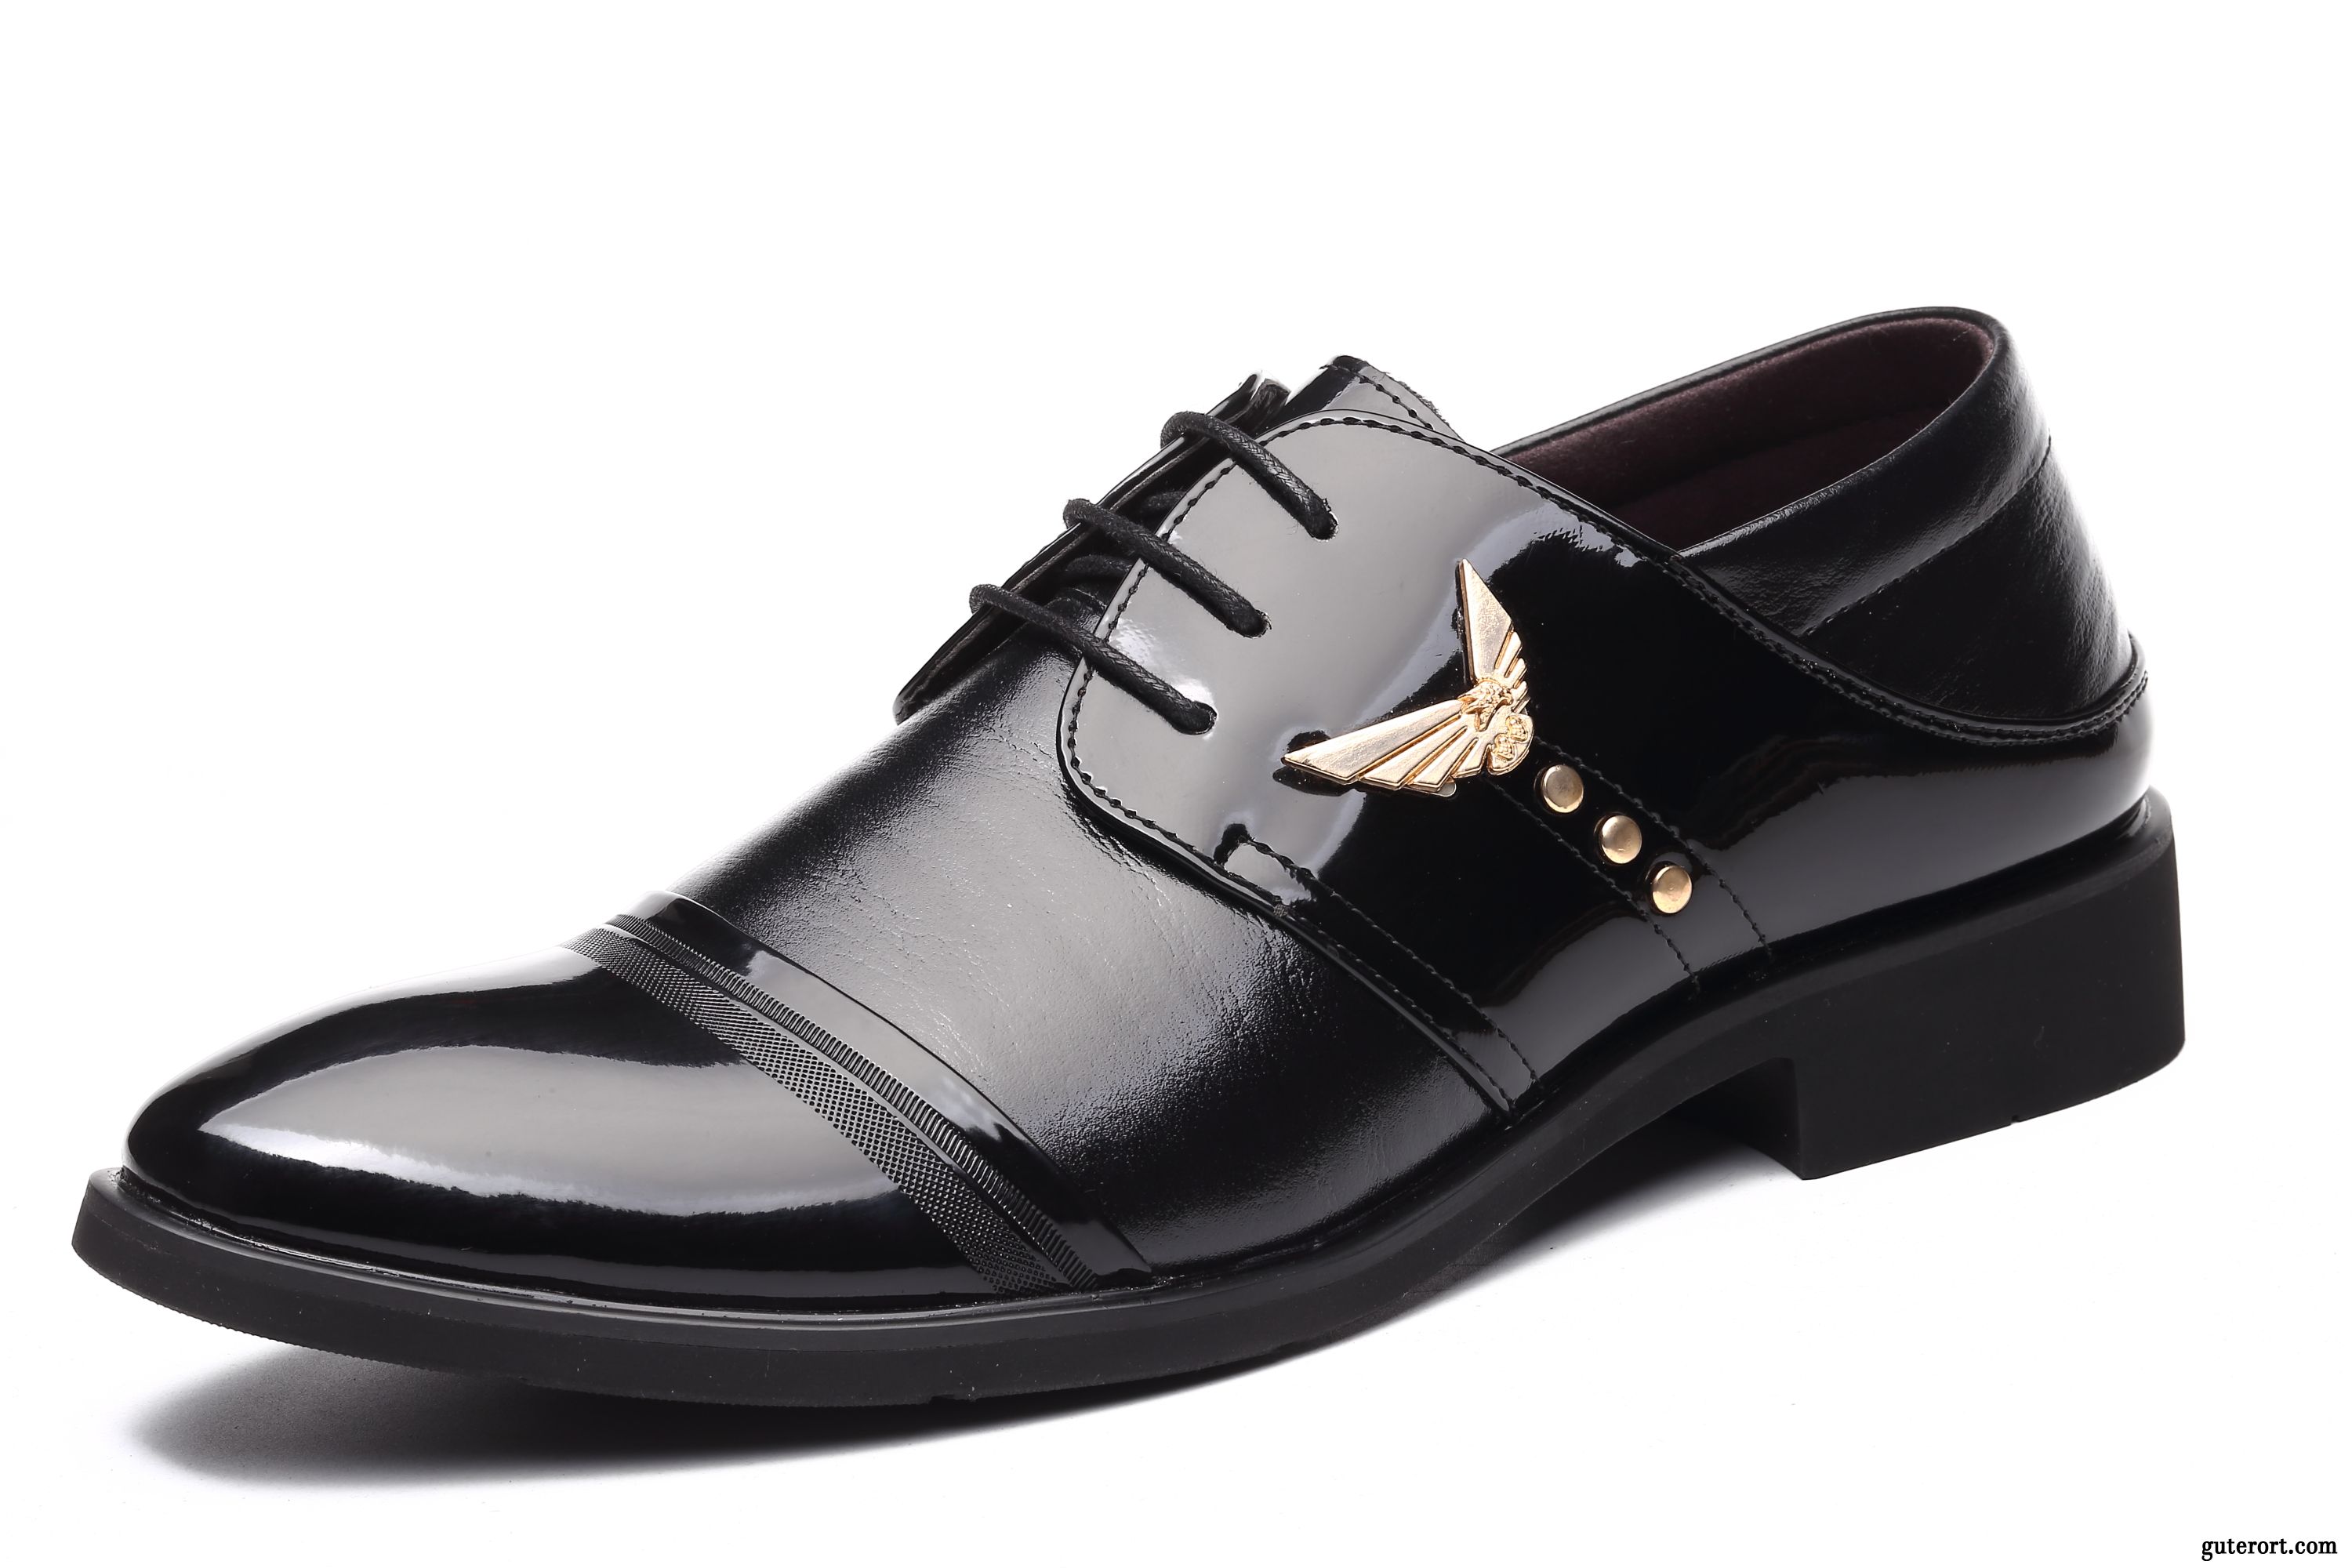 Braune Leder Schuhe Herren Lederschuhe Sandbeige, Festliche Schuhe Herren